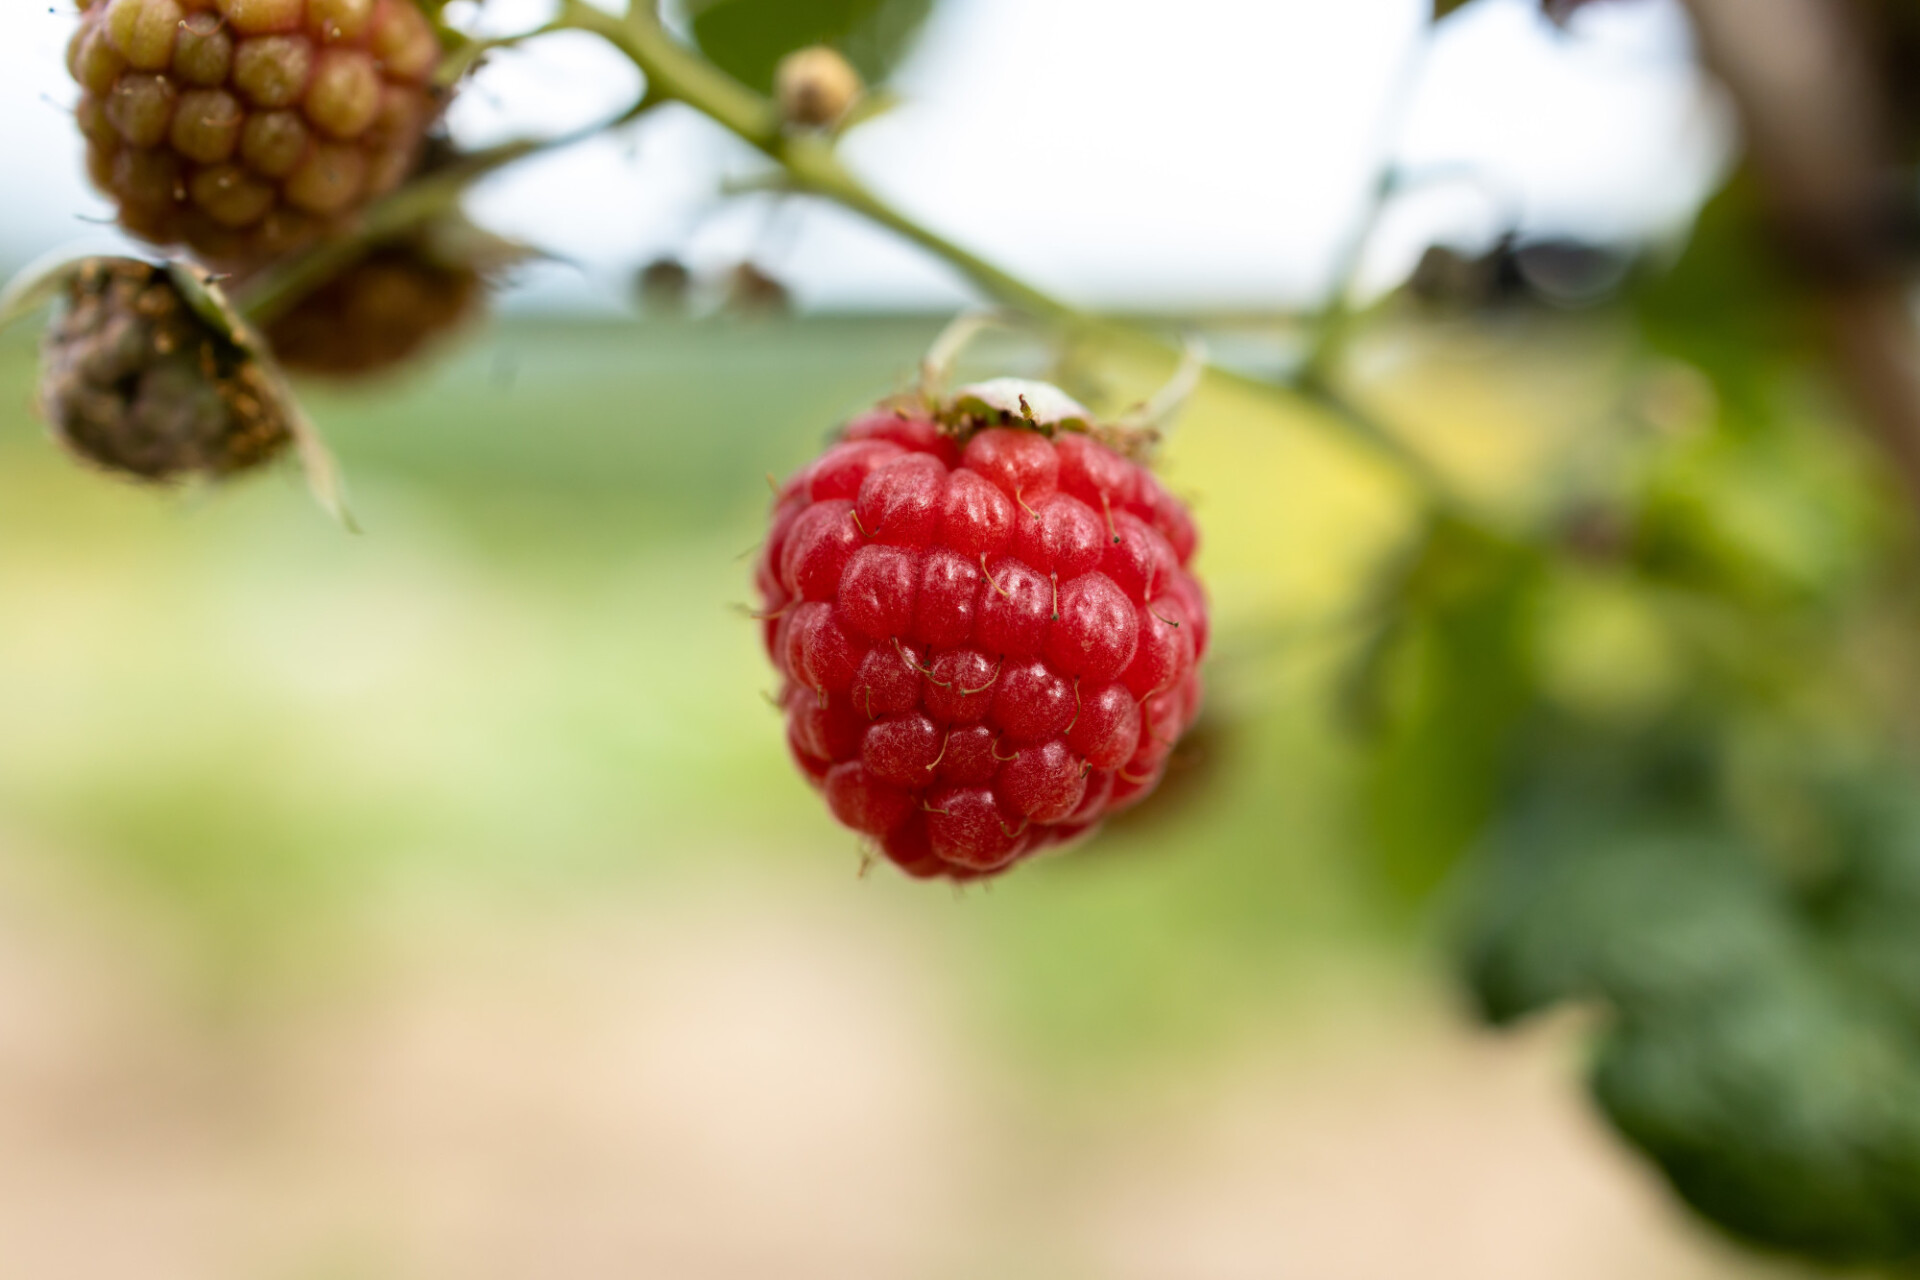 Delicious Delicious raspberry ripens in the sun